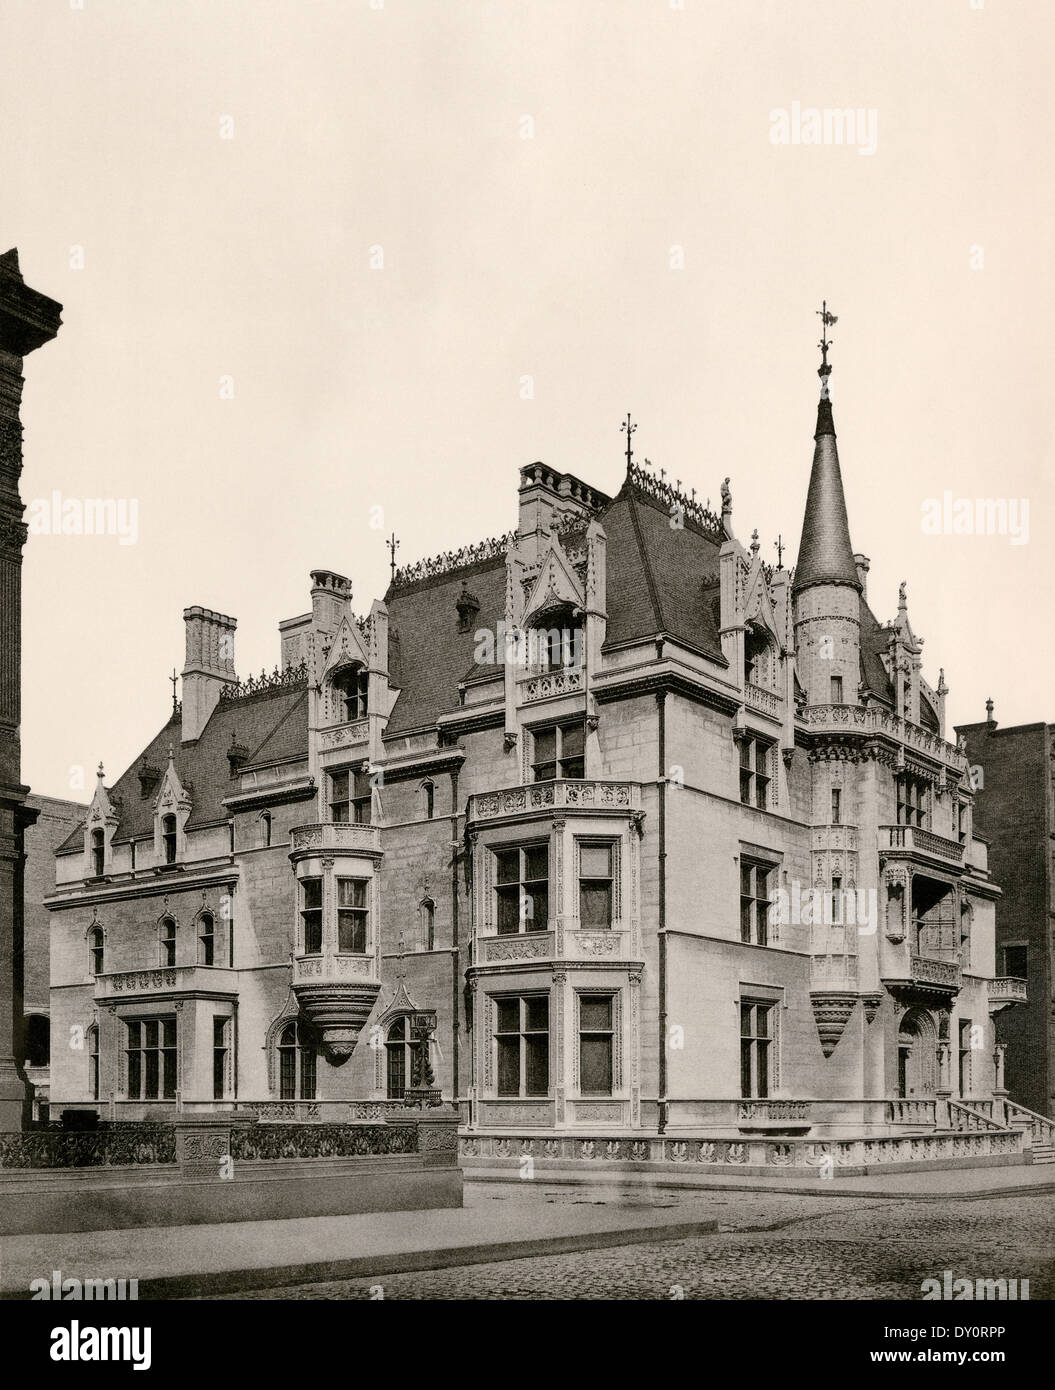 Maison de William K. Vanderbilt, conçue par Richard Morris Hunt, Cinquième Avenue, New York, 1886. Photographie Banque D'Images